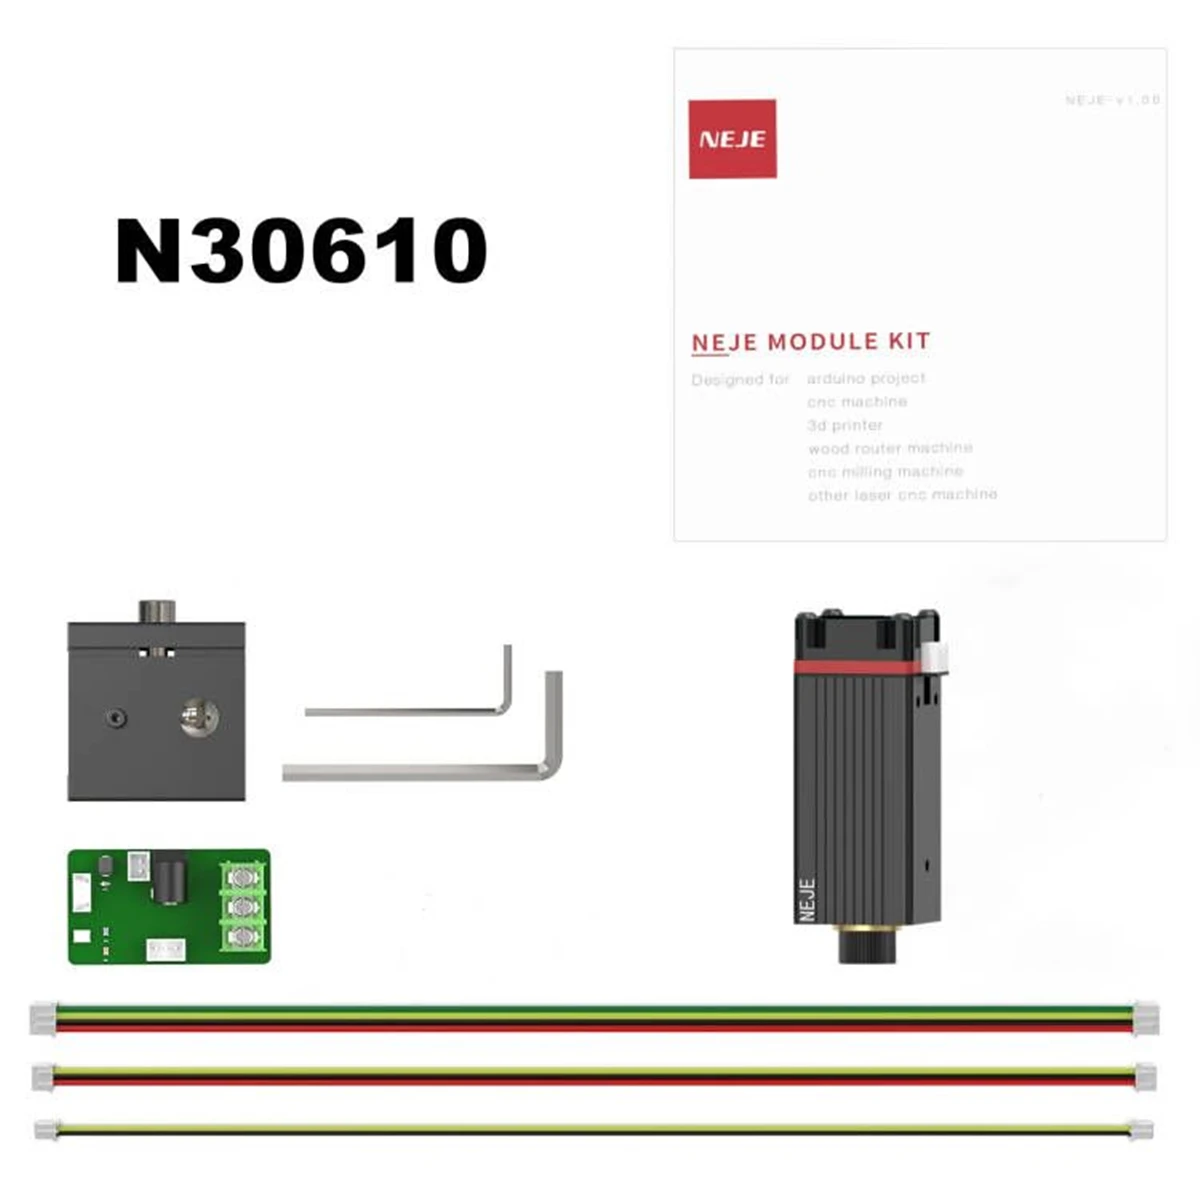 NEJE N30610 15W Laser Module Kit CNC Blue Light With TTL / PWM Modulation for NEJE Laser Engraver Laser Cutting DIY